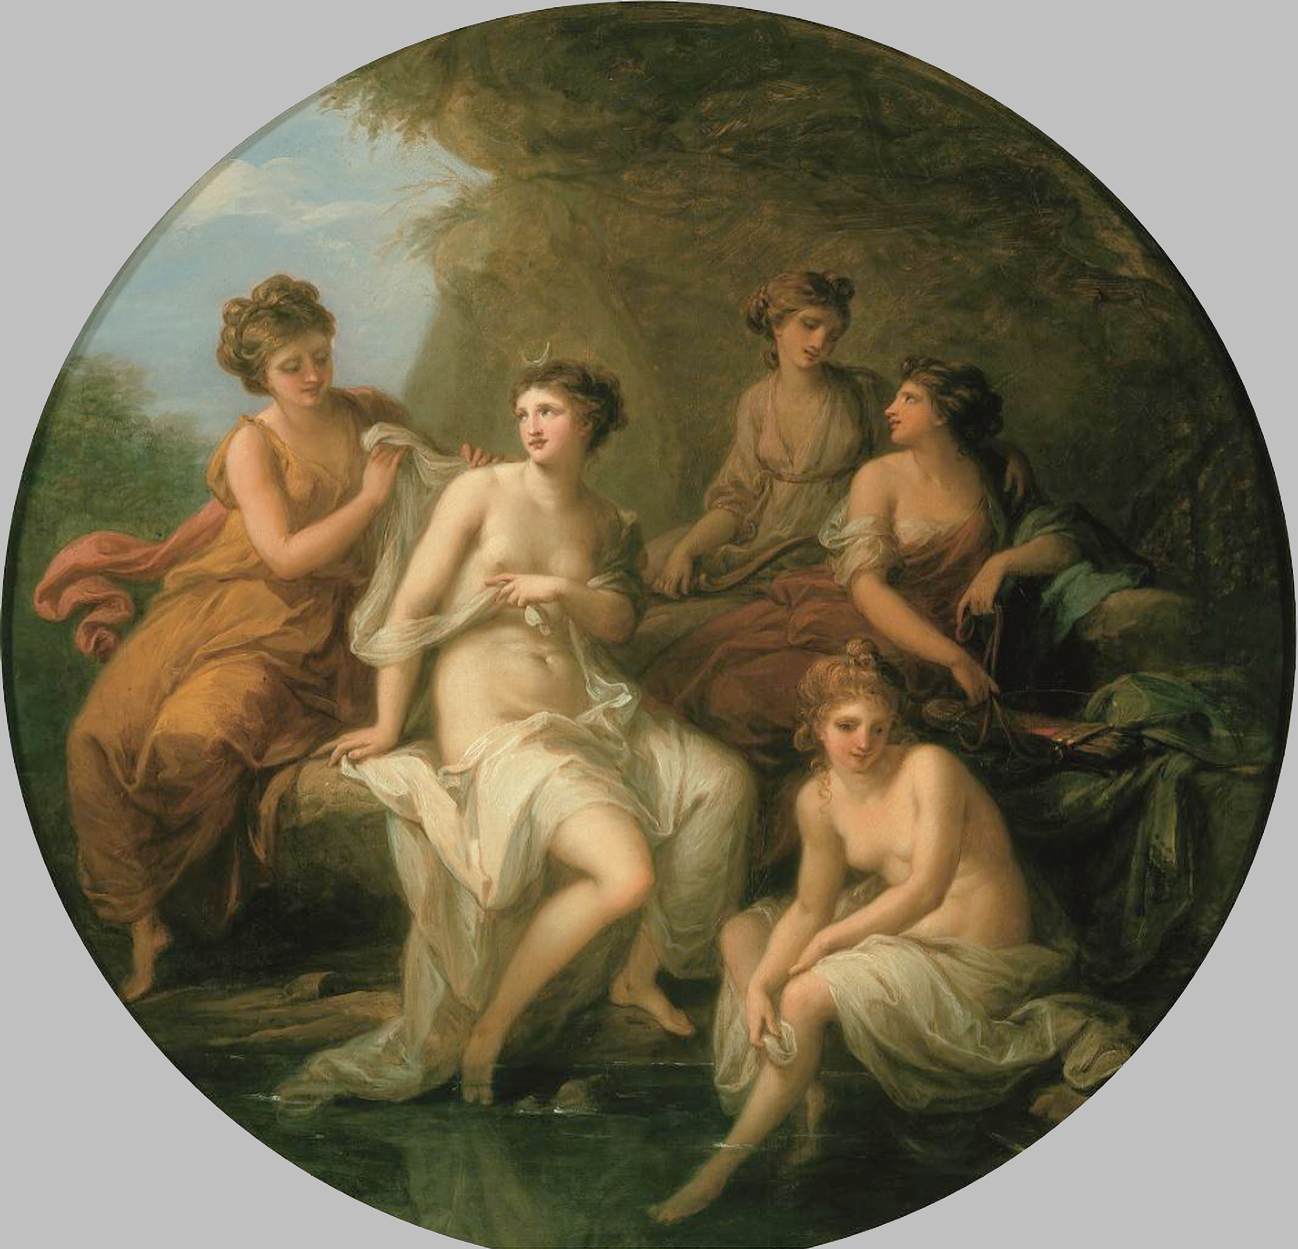 Diana og hendes nymfer badede